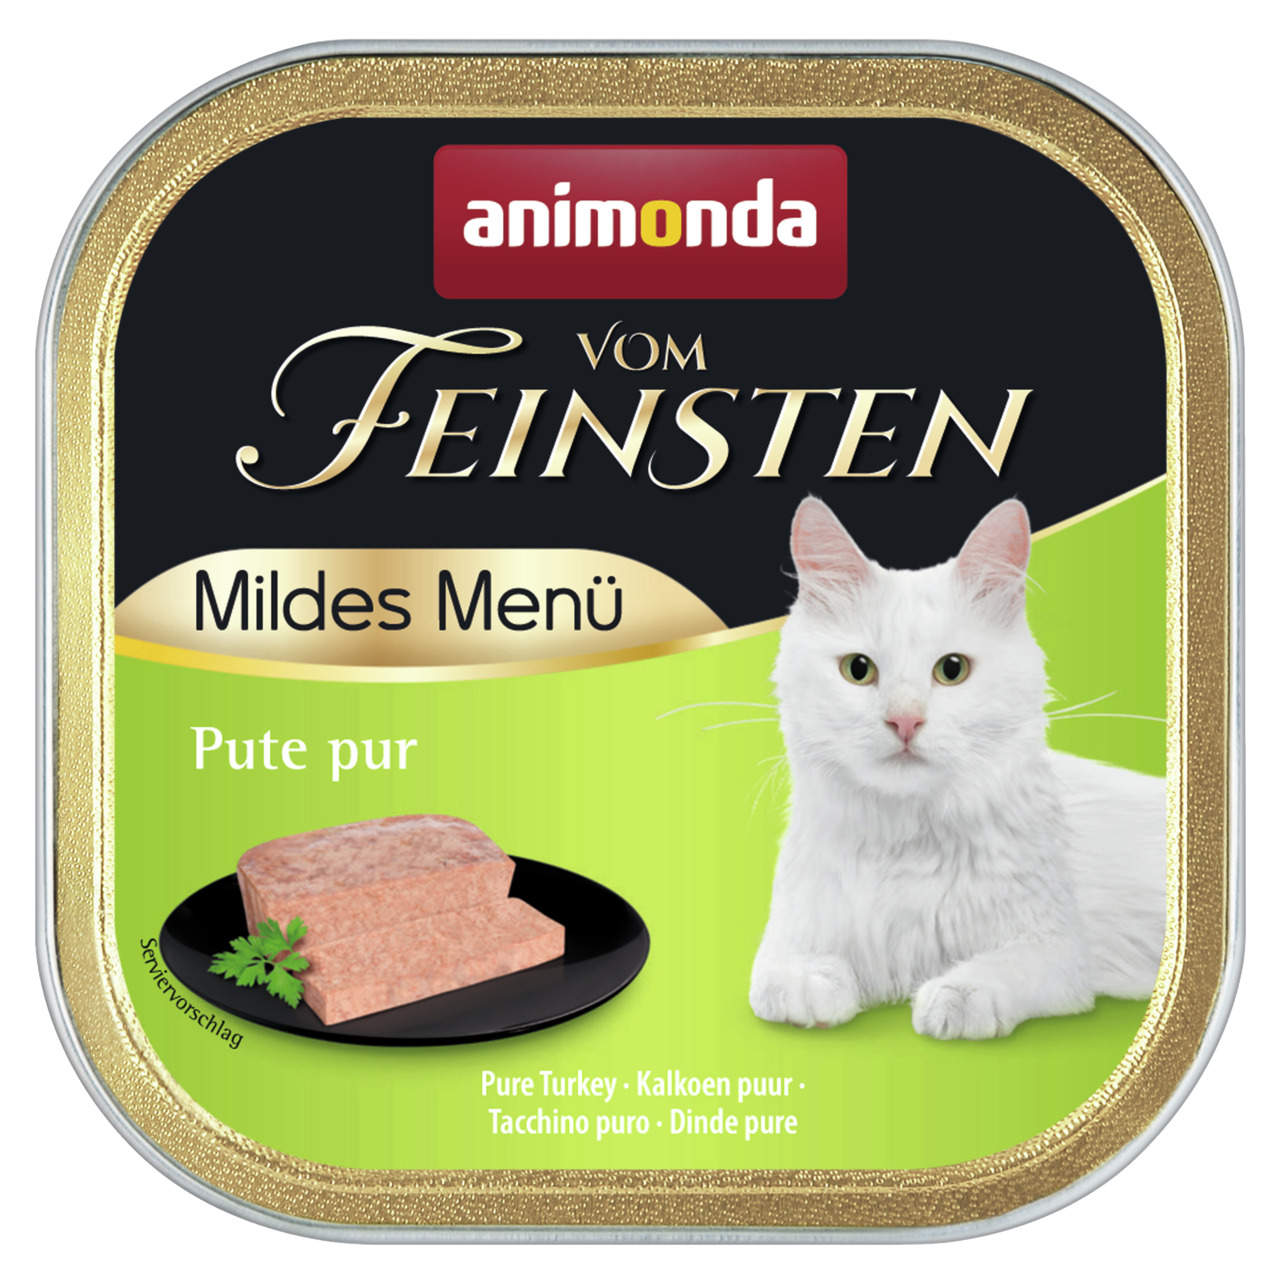 Animonda vom Feinsten Mildes Menü Pute pur Katzen Nassfutter 100 g